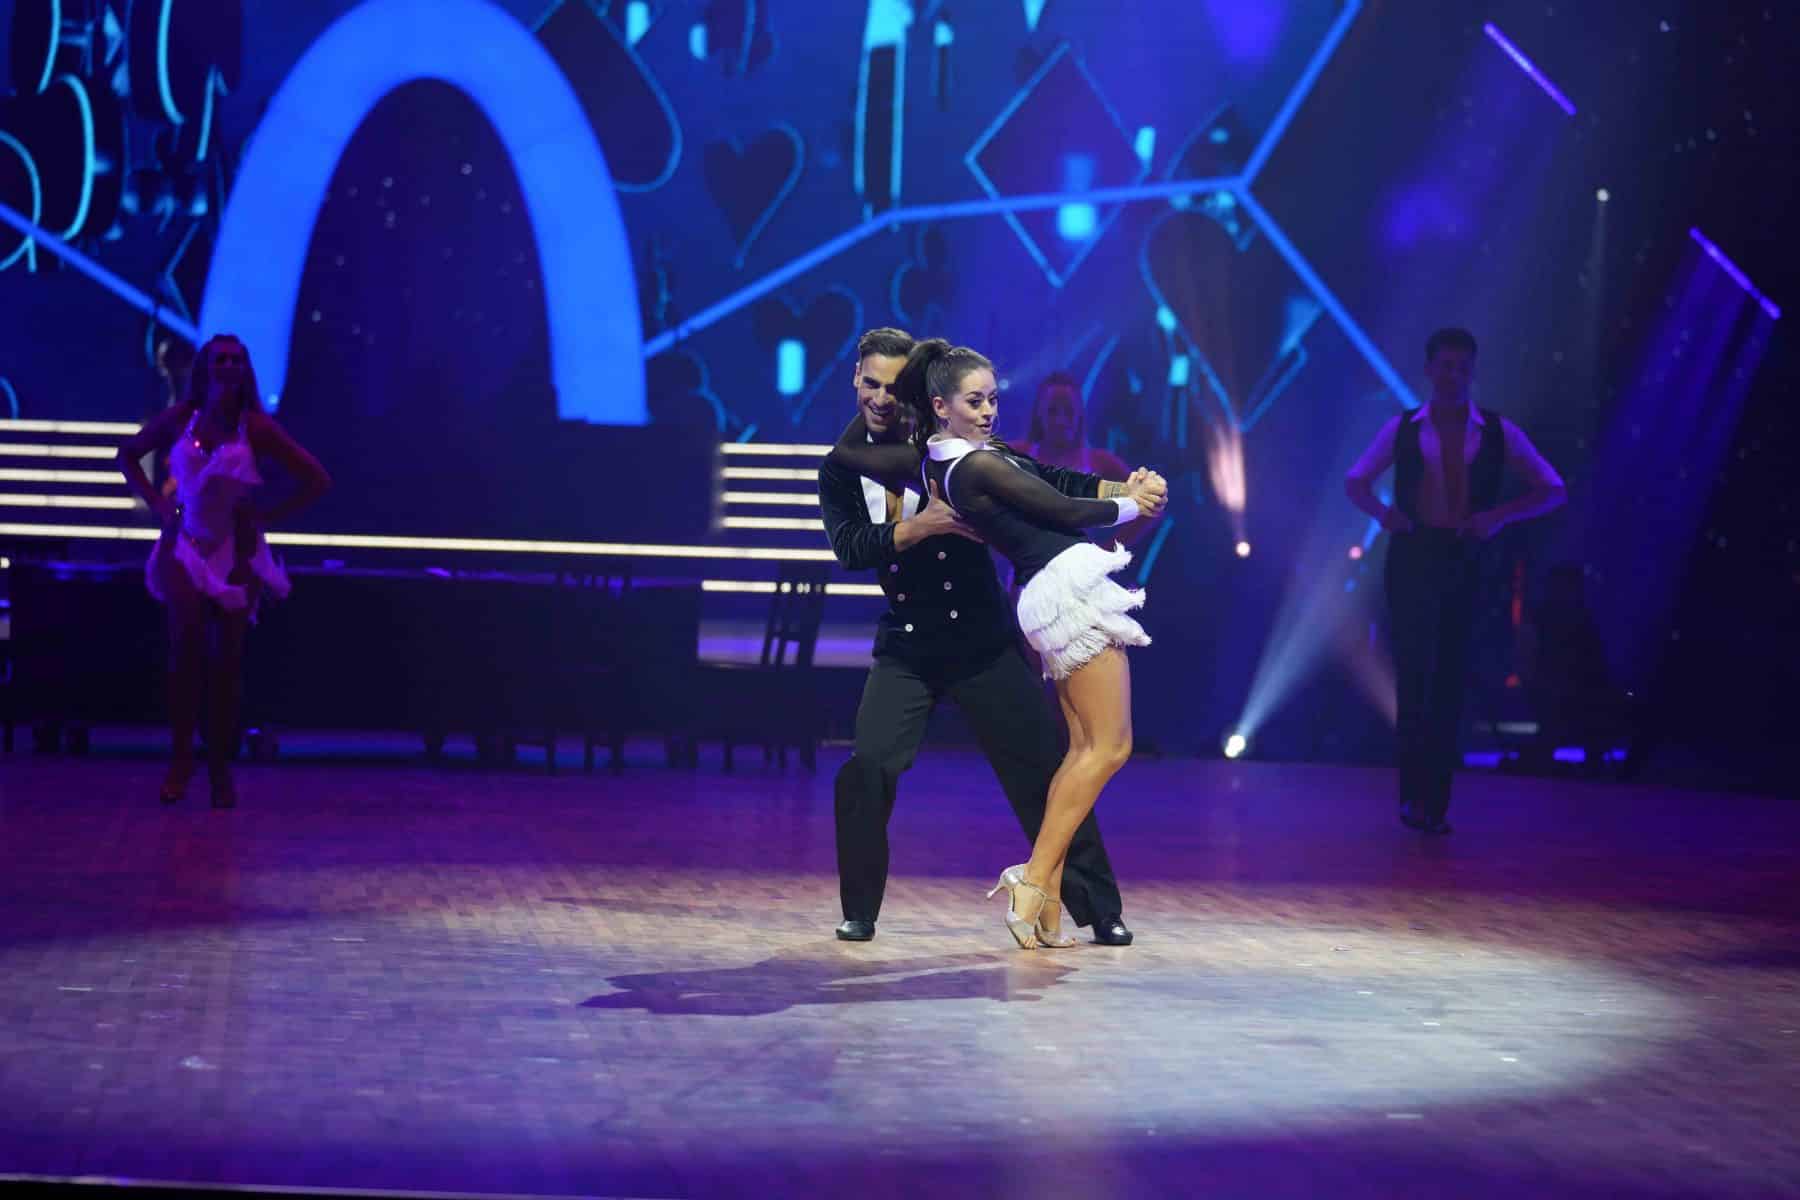 14.11.2022 Tänzerin Malika Dzumaev und Schauspieler Timur Ülker bei der Show Let s Dance - Die Live-Tournee 2022.